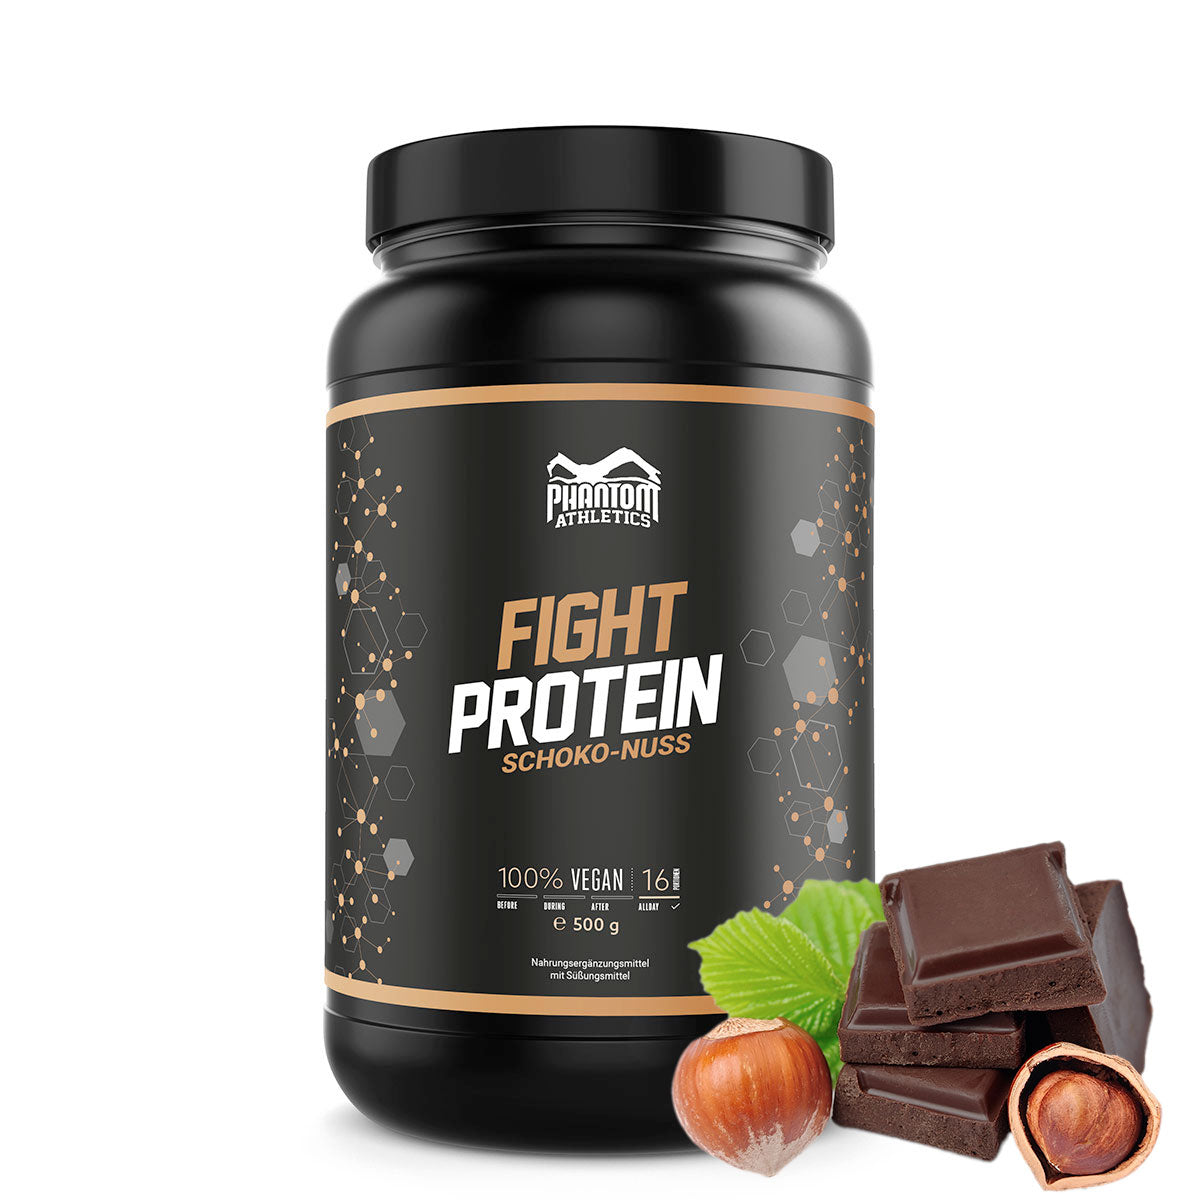 Phantom FIGHT Protein für Kampfsportler mit Schoko Nuss Geschmack.